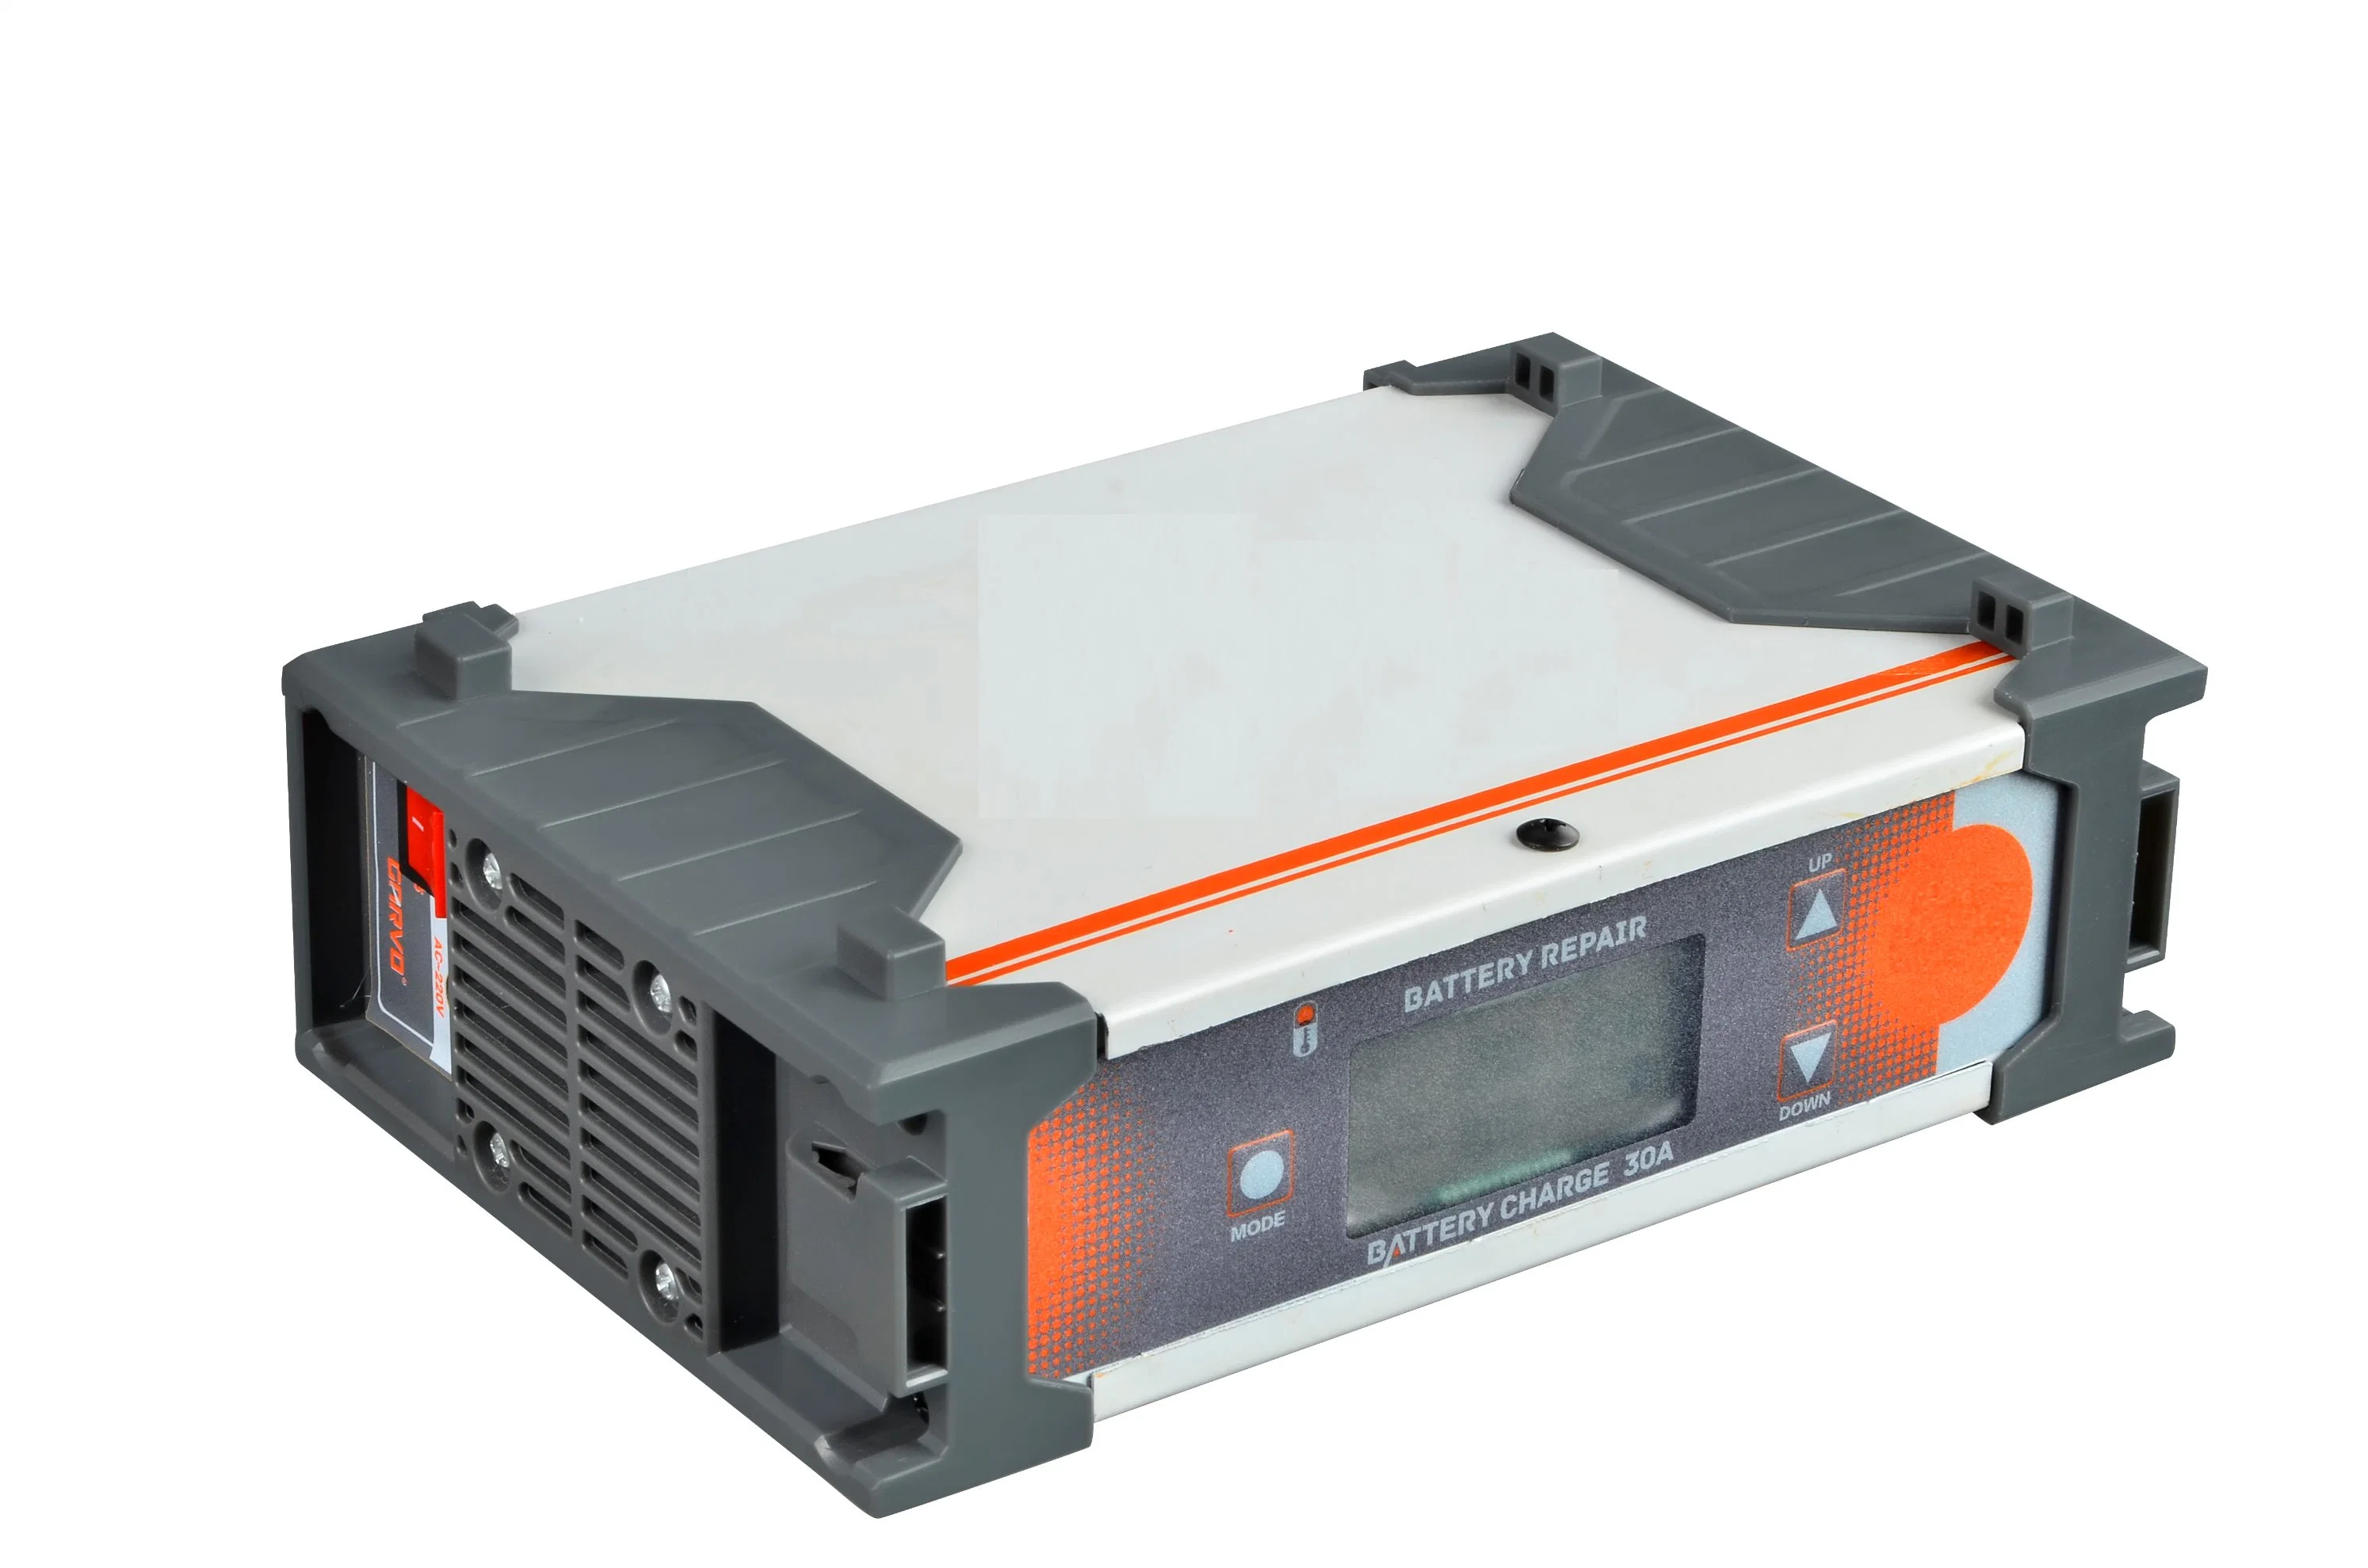 300A-Super Efficient-Professional eléctrico Multifunción digital/inversor/cargador de batería Batería de coche Starter-Power Reparing/Saltar herramientas